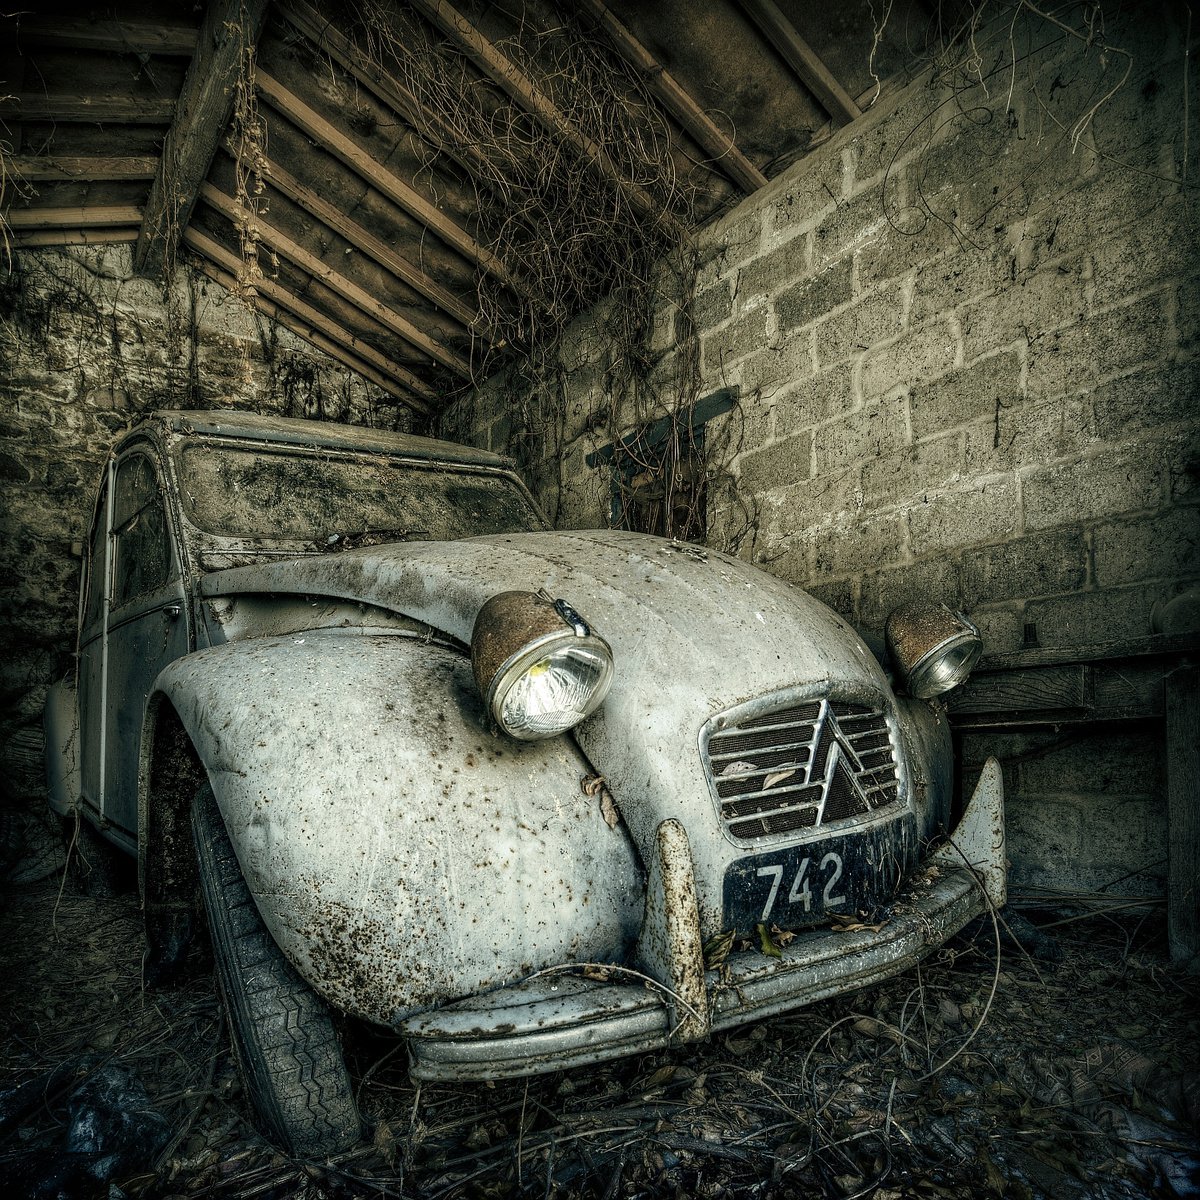 Old 2 CV Car by Ben Schreck